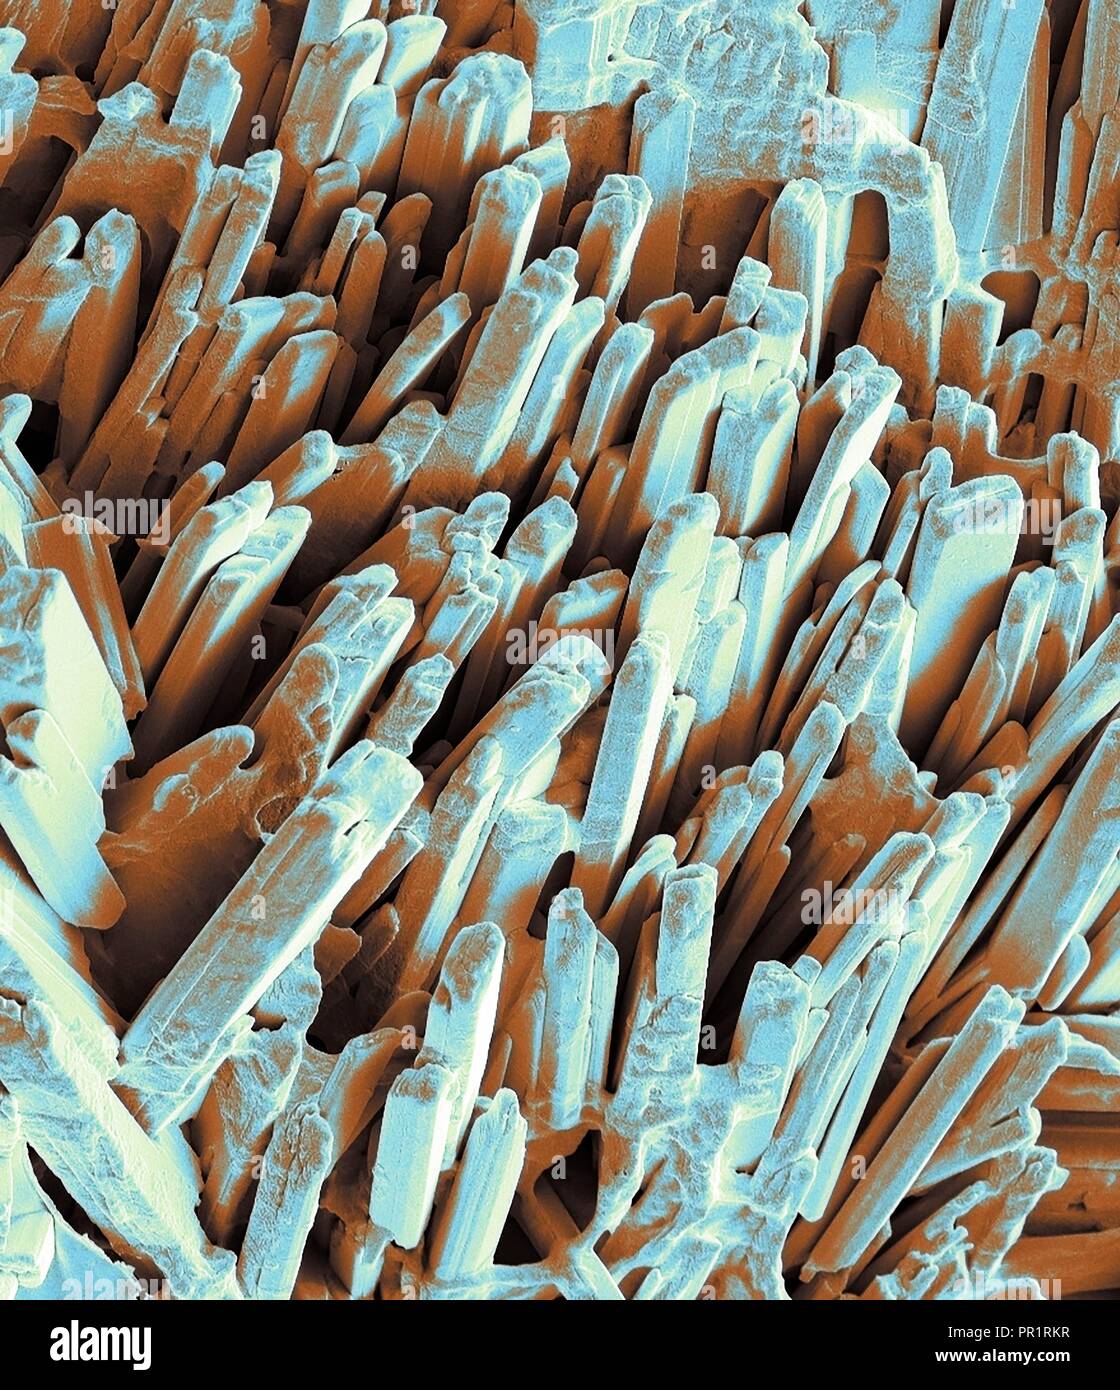 Gallstone cristalli. Color scanning electron microfotografia (SEM) della  superficie cristallina di un gallstone fratturato. Modulo di calcoli  biliari nella cistifellea quando vi è uno squilibrio nella composizione  chimica della bile. Calcoli biliari